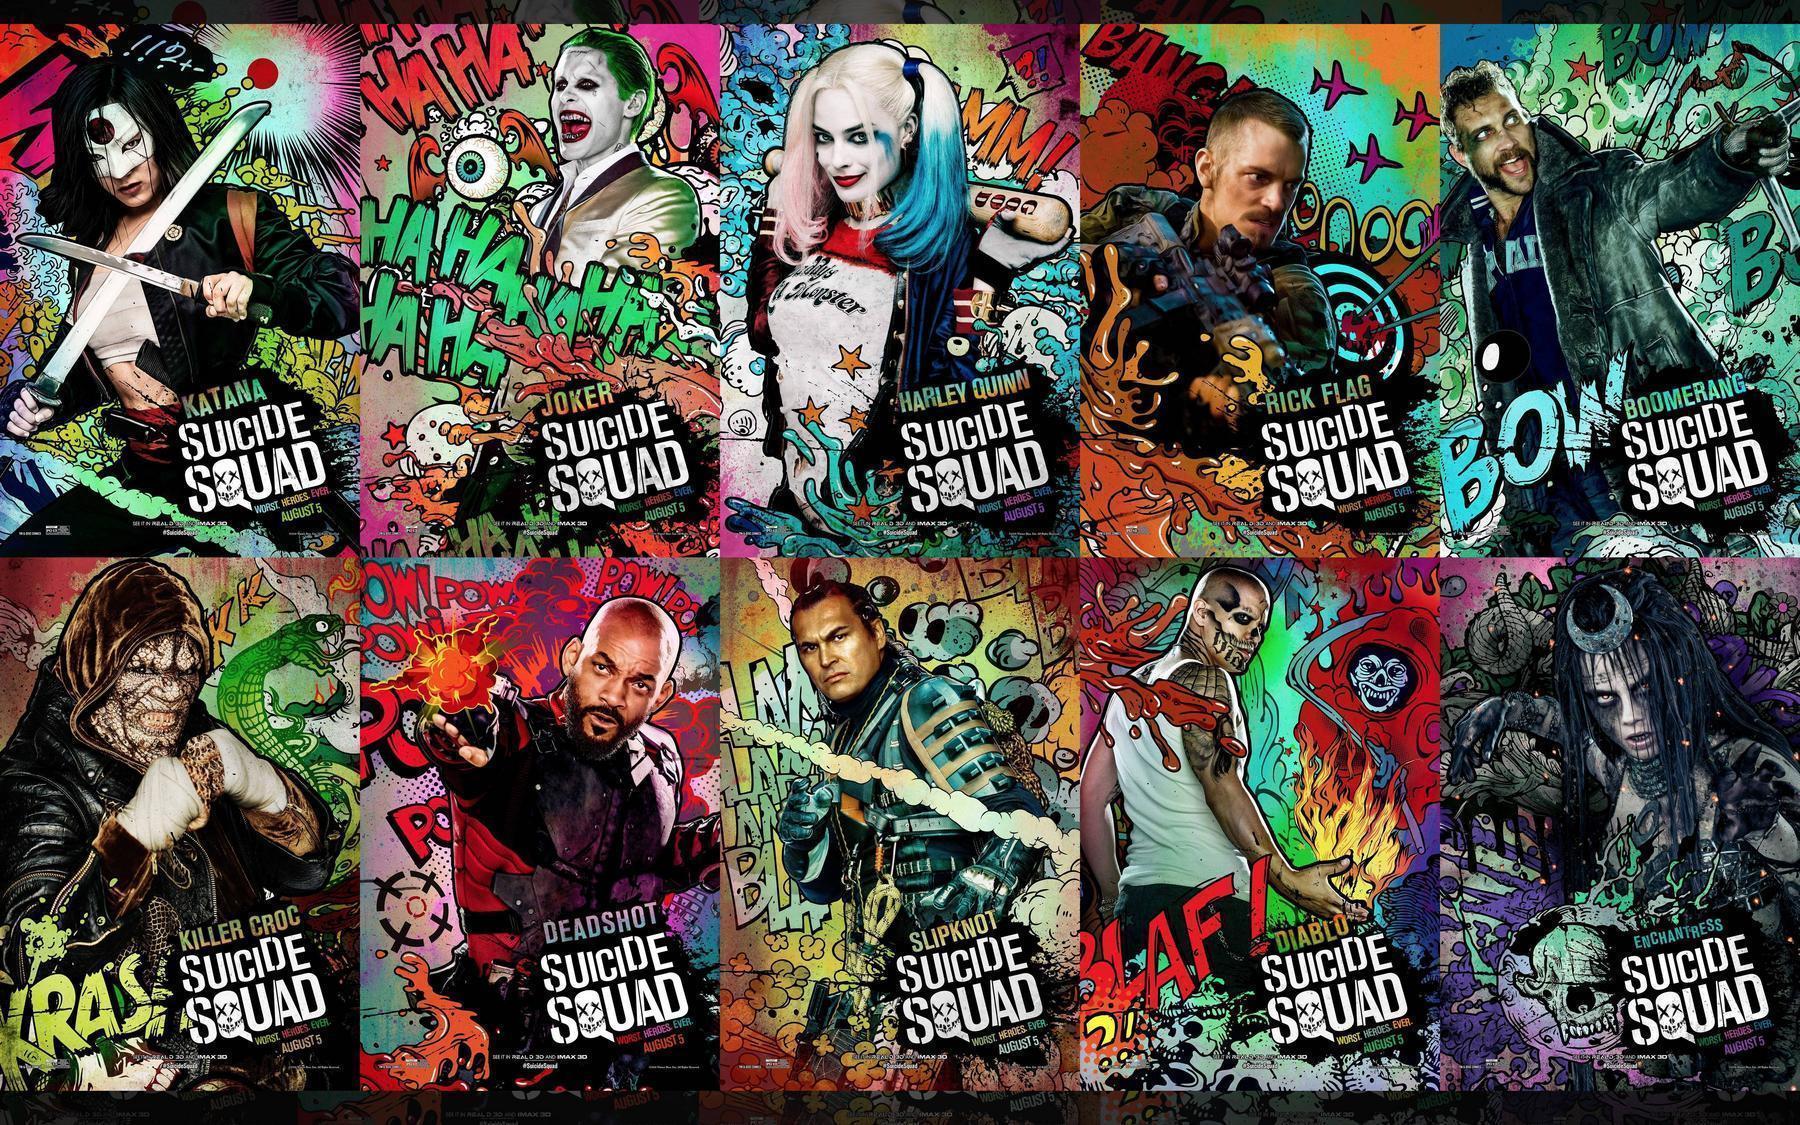 Suicide Squad Wallpaper. Petrulez Wallpaper HD